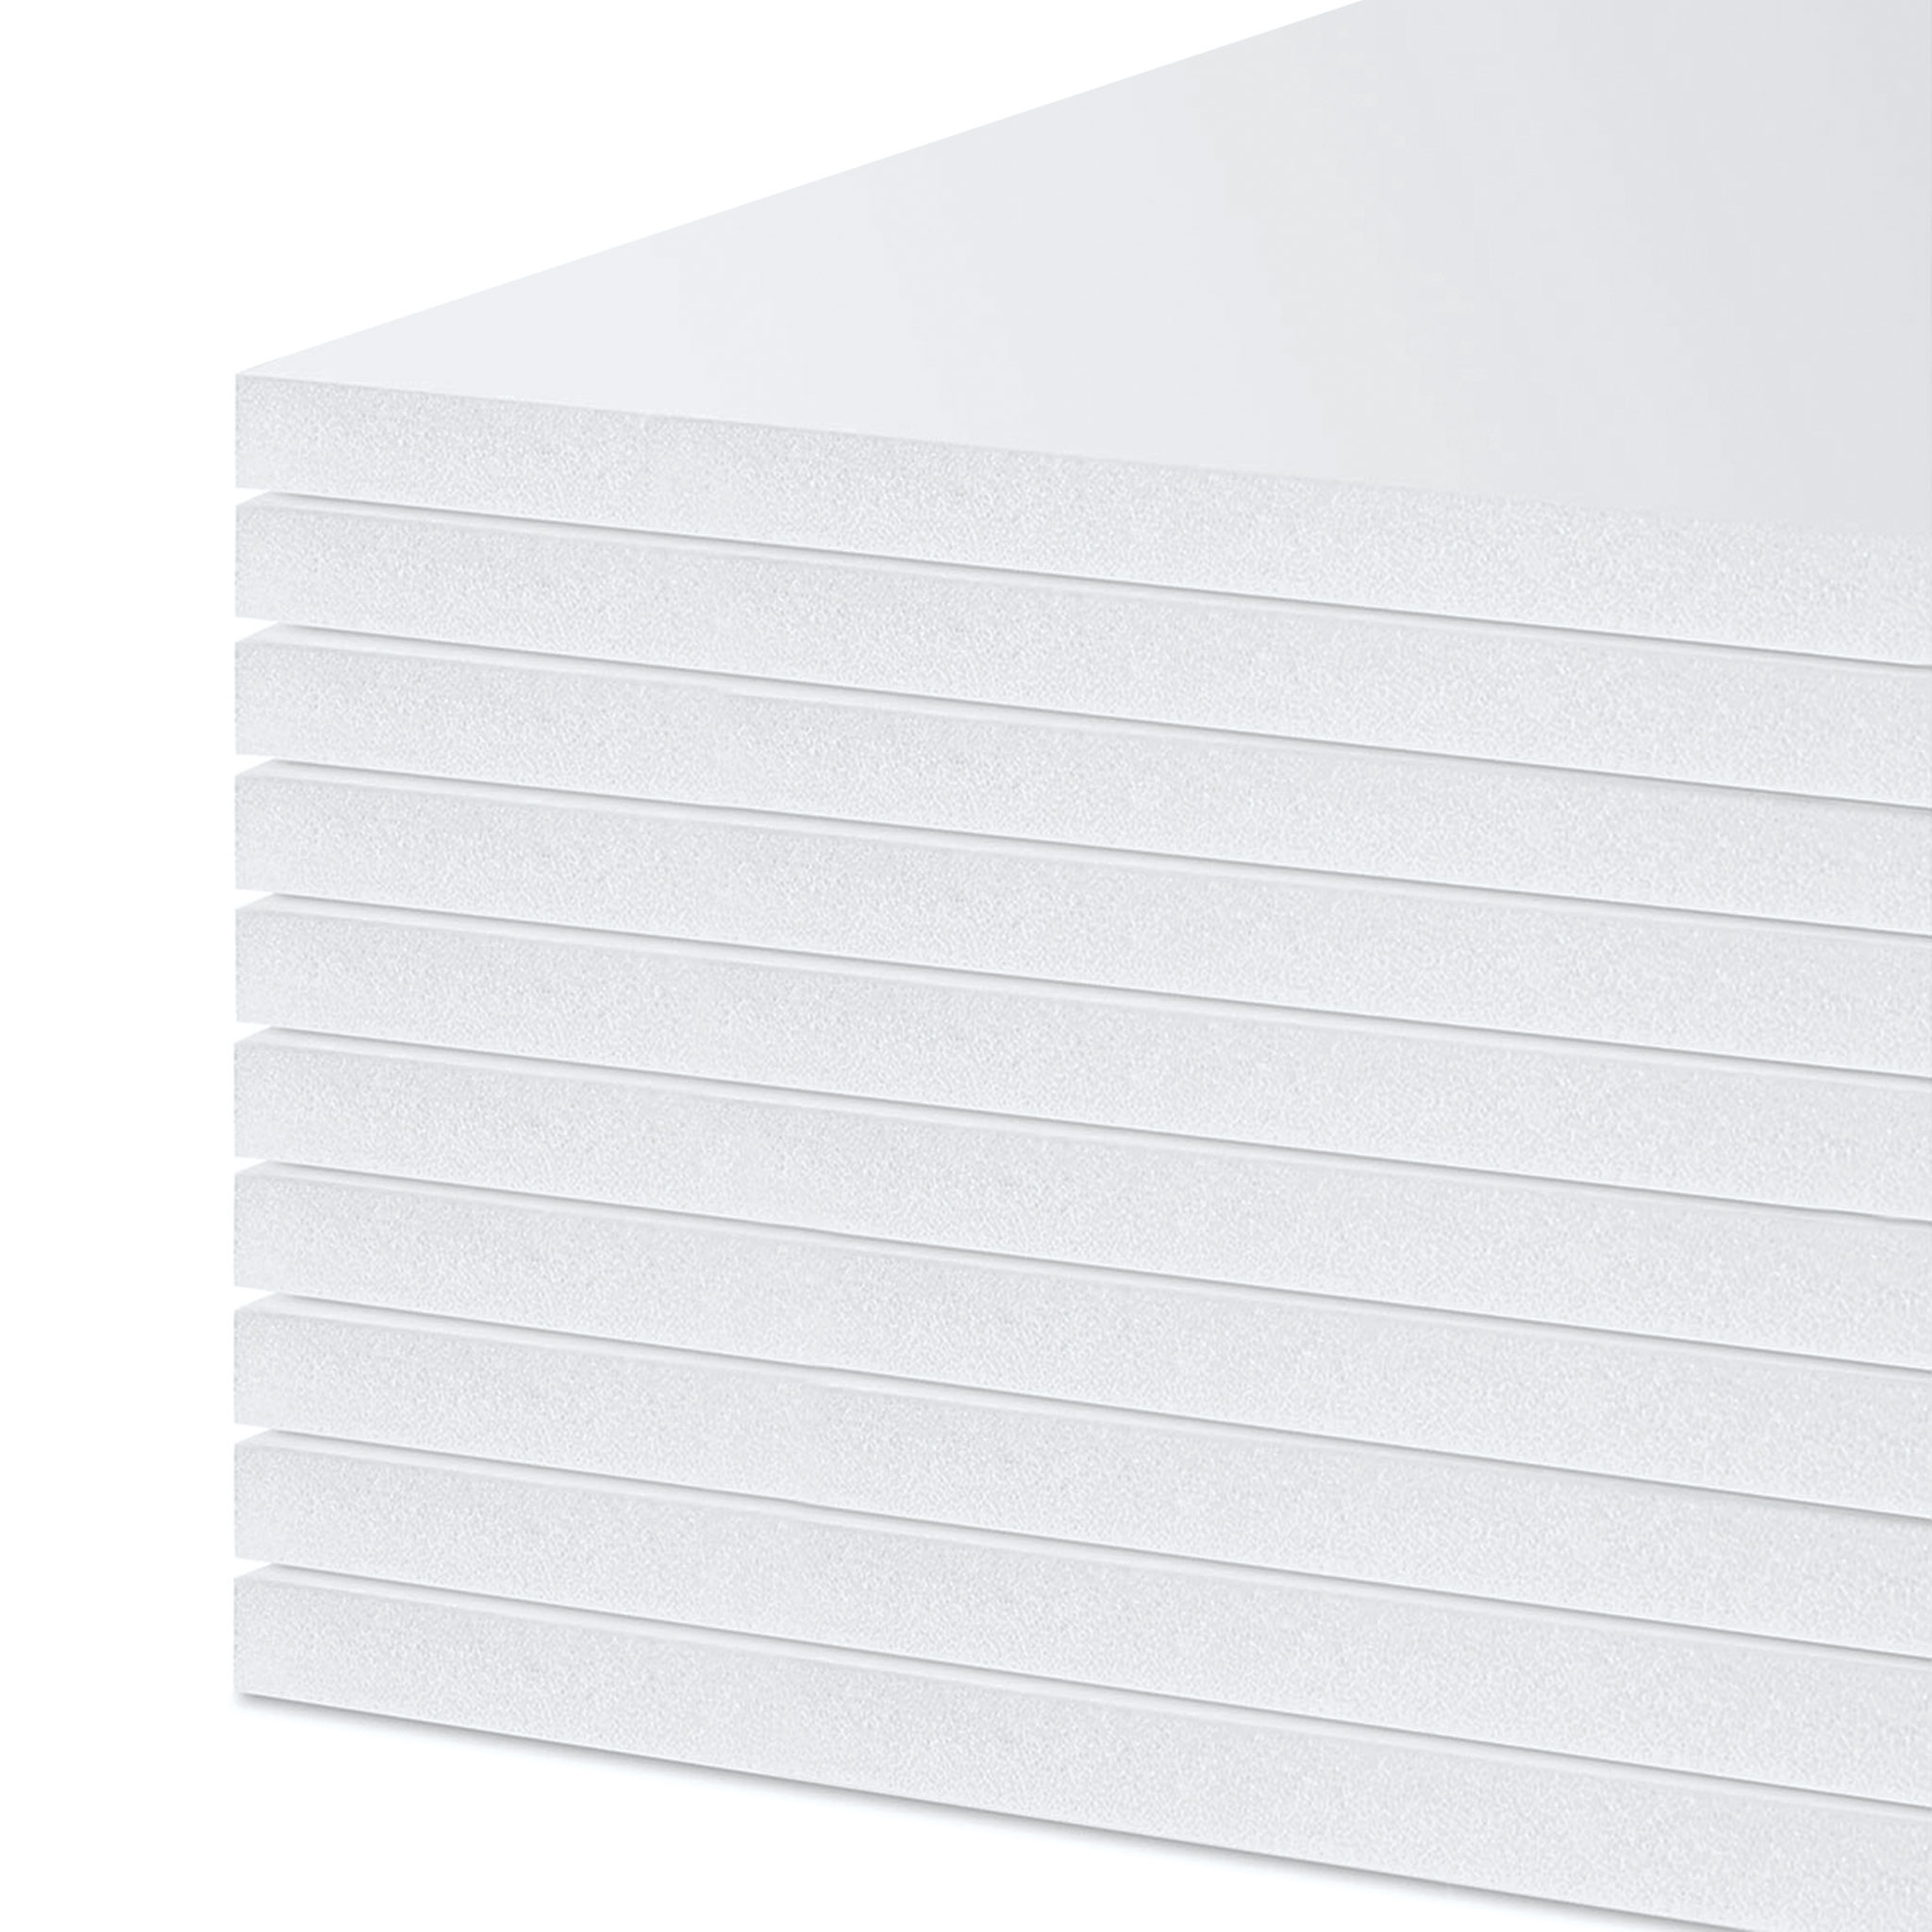 Foamboard 40 x 60, 1/2 thick, White